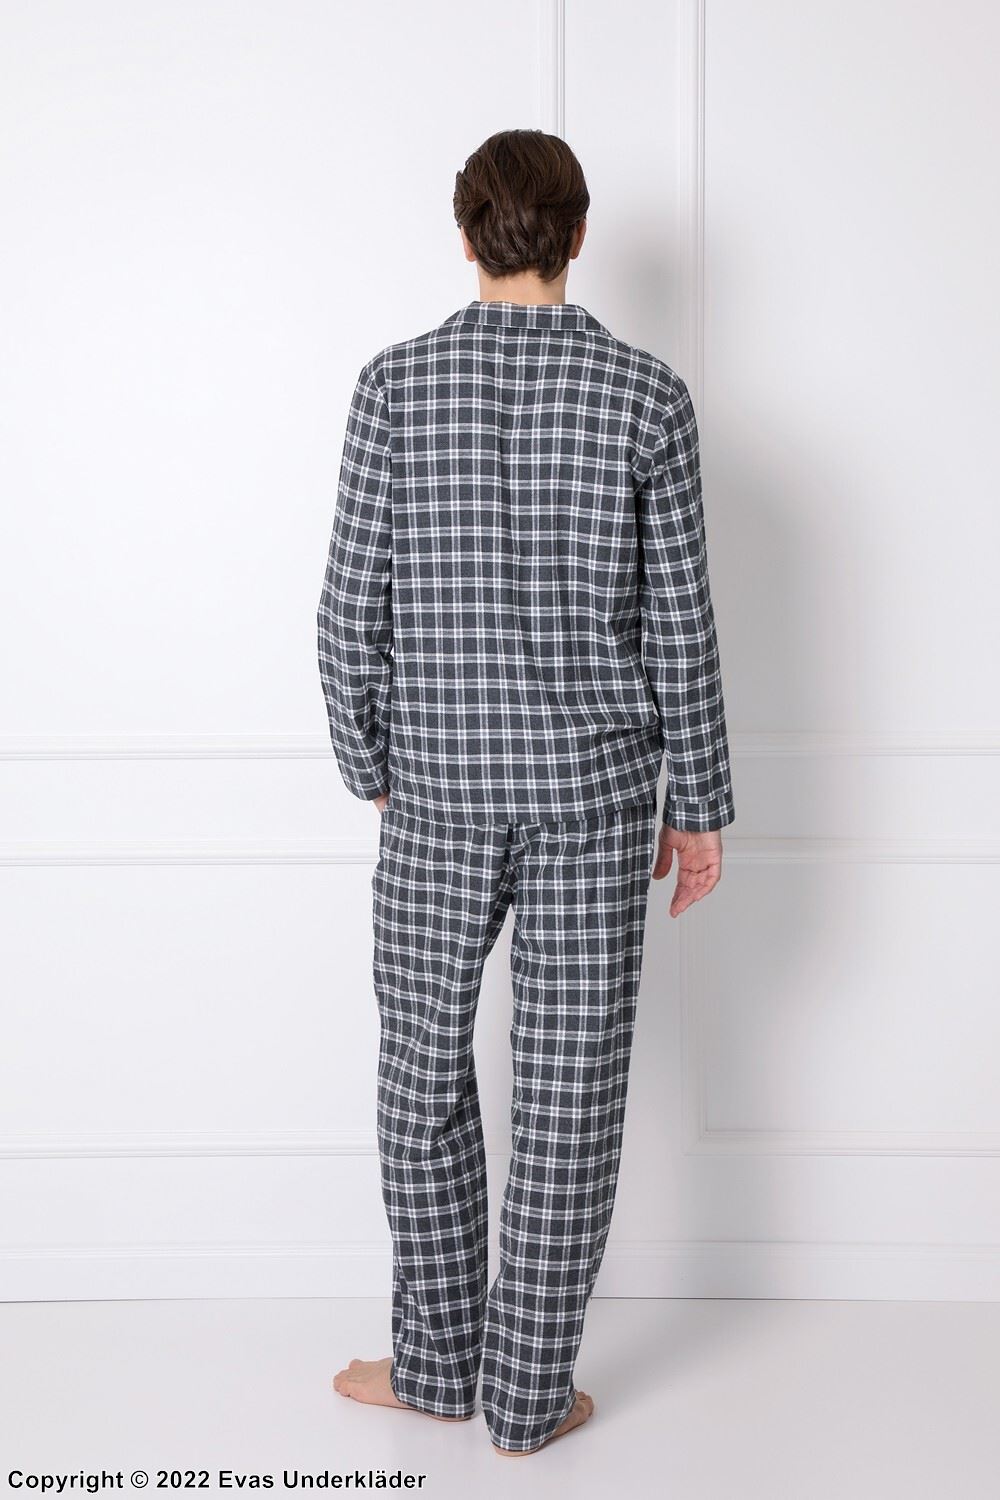 Men's top and pants pajamas, long sleeves, pocket, checkered pattern